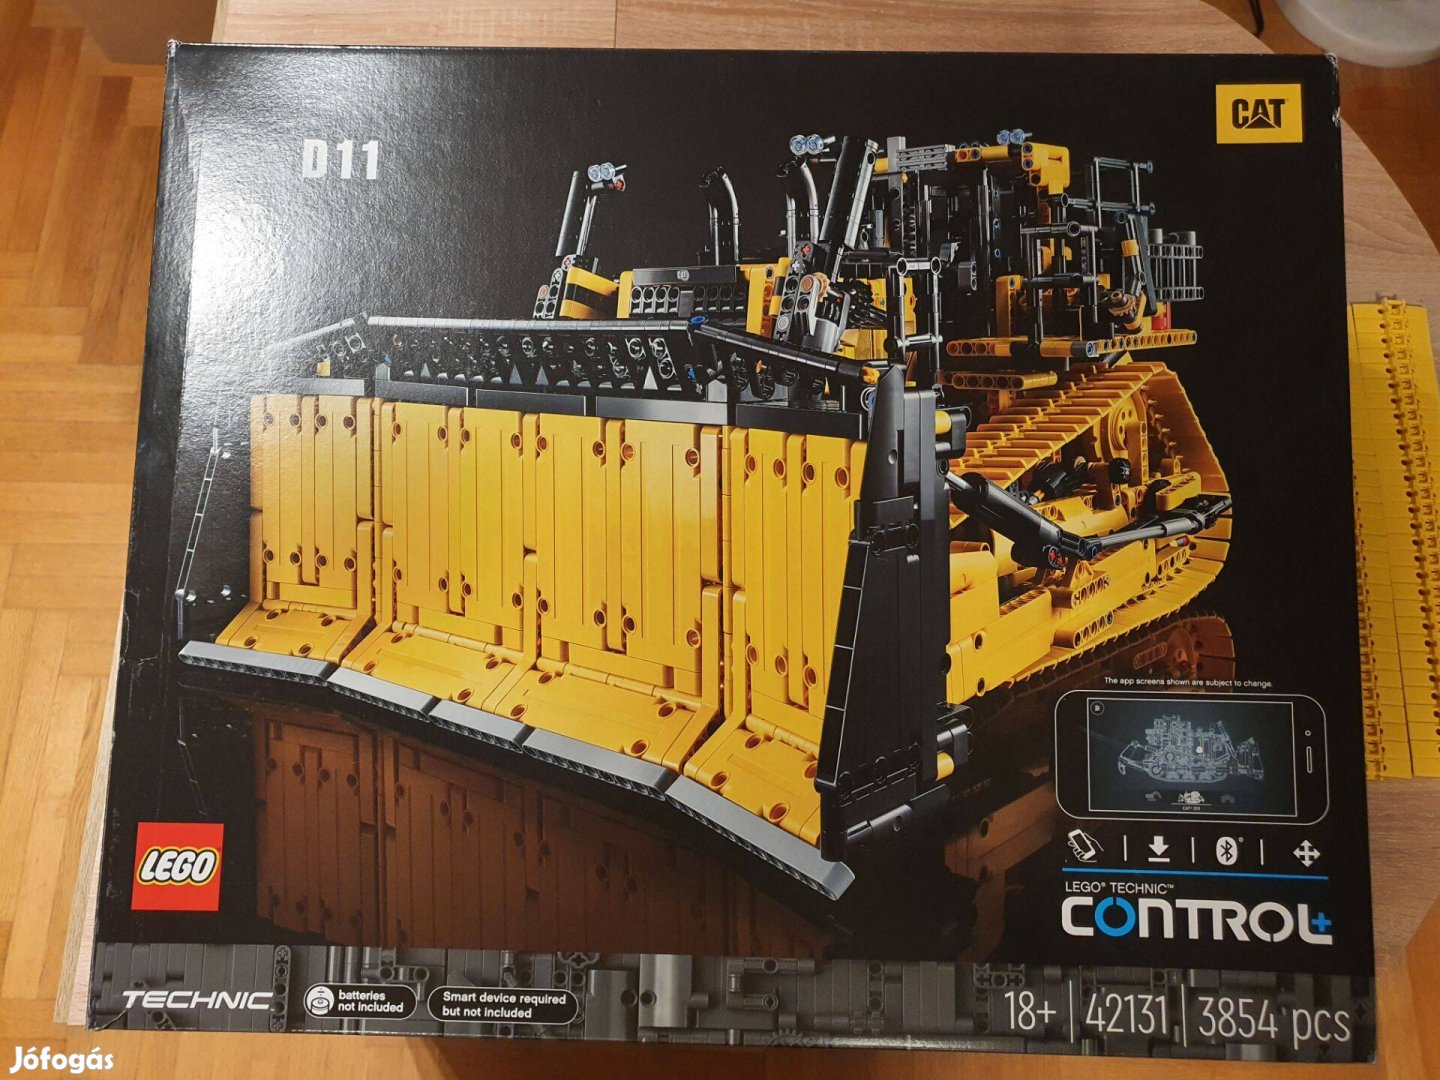 LEGO 42131 Cat D11 Bulldozer- teljes dobozzal és leírással